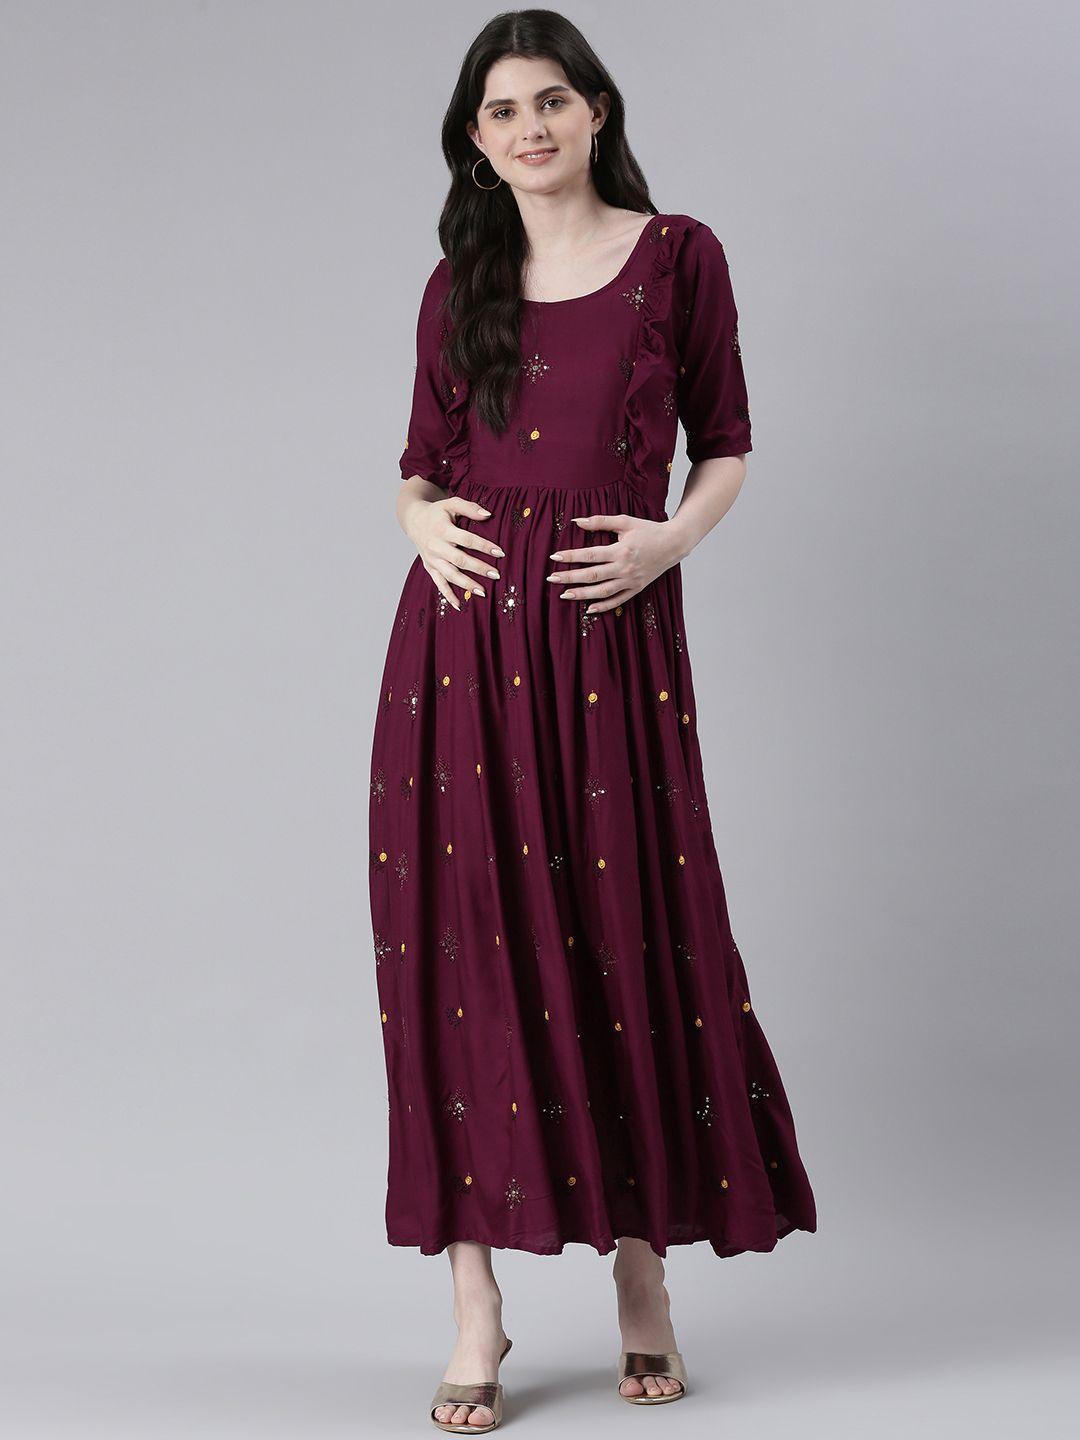 swishchick embellished embroidered ruffled maternity fit & flare maxi ethnic dress